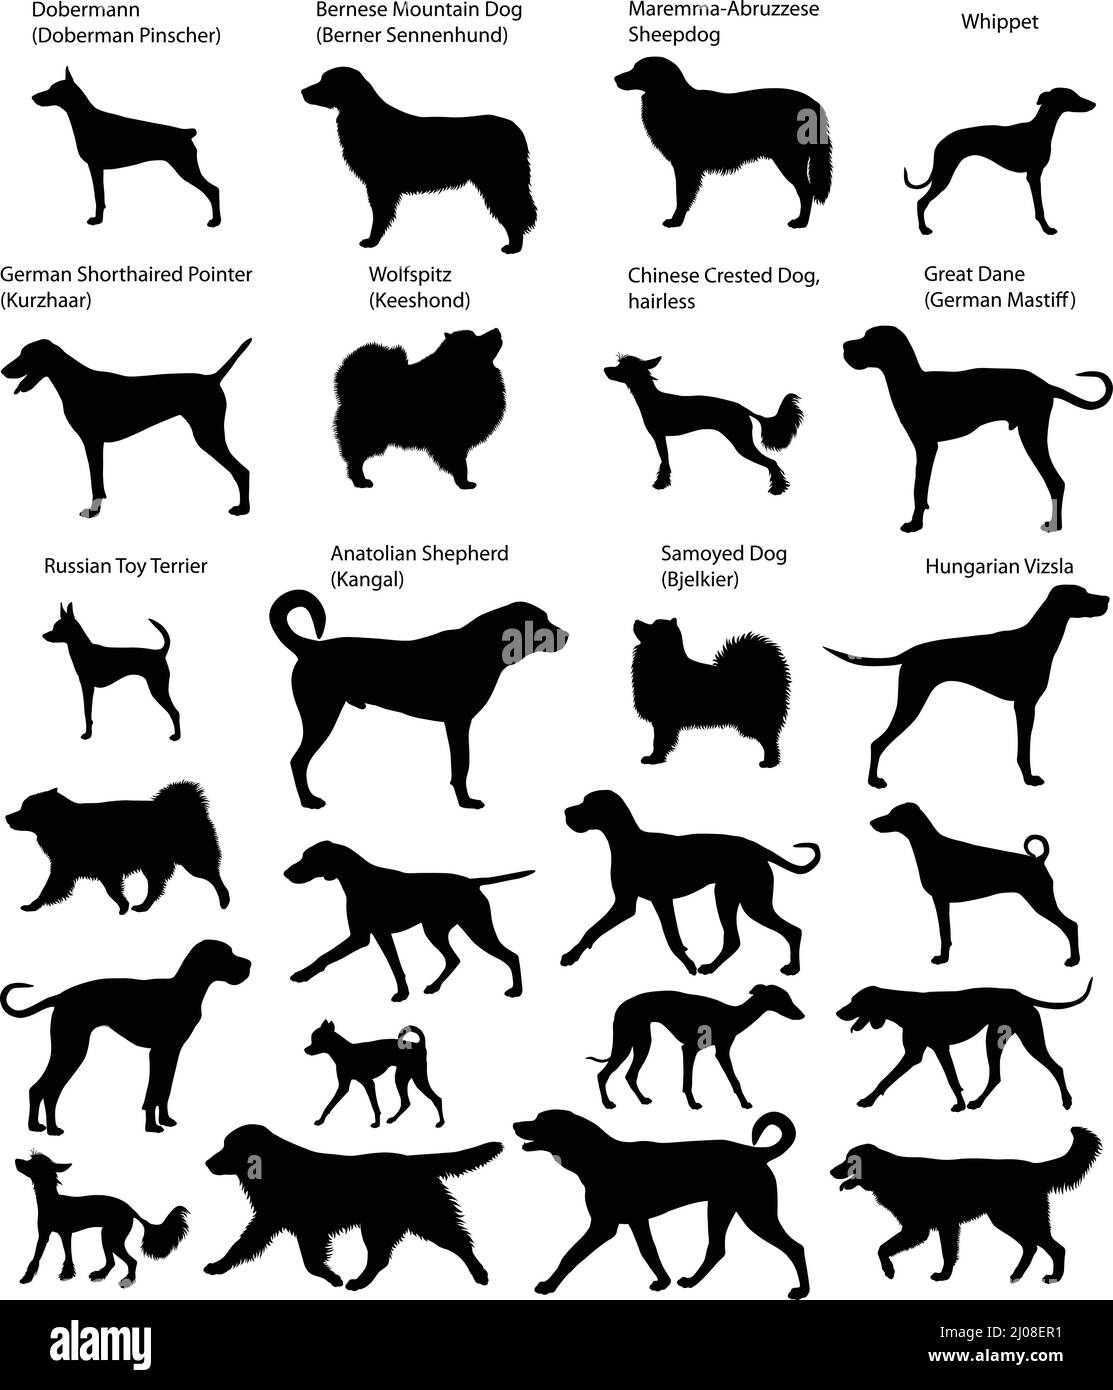 Sammlung von Silhouetten verschiedener Hunderassen: Great dane, kurzhaar, sennenhund, doberman, wolfspitz, vizsla, samoyed, Toy Terrier, Whippet Stock Vektor